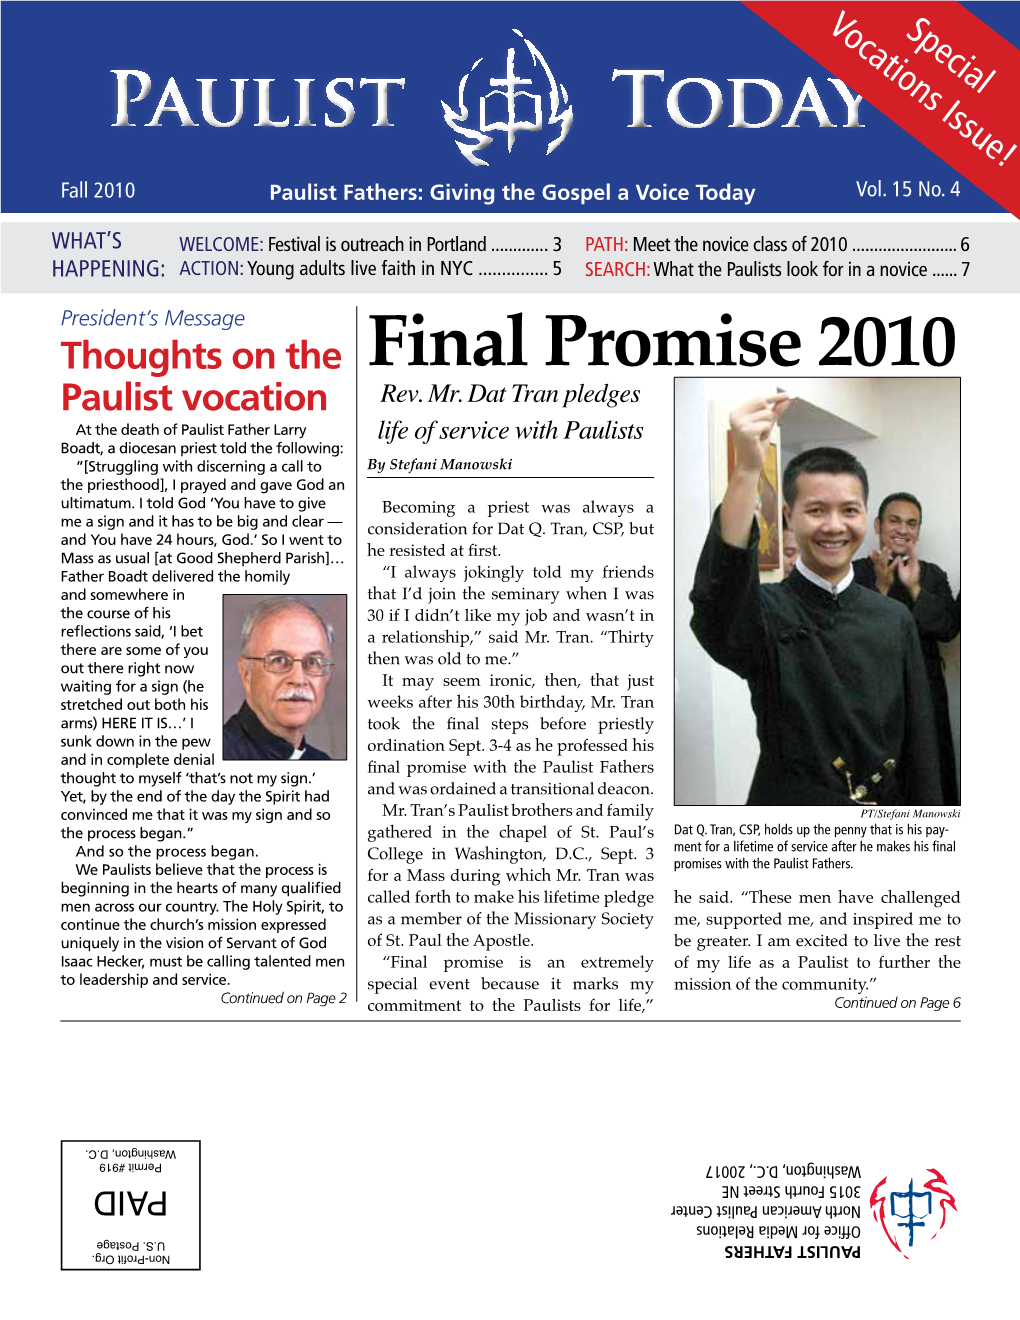 Final Promise 2010 Paulist Vocation Rev